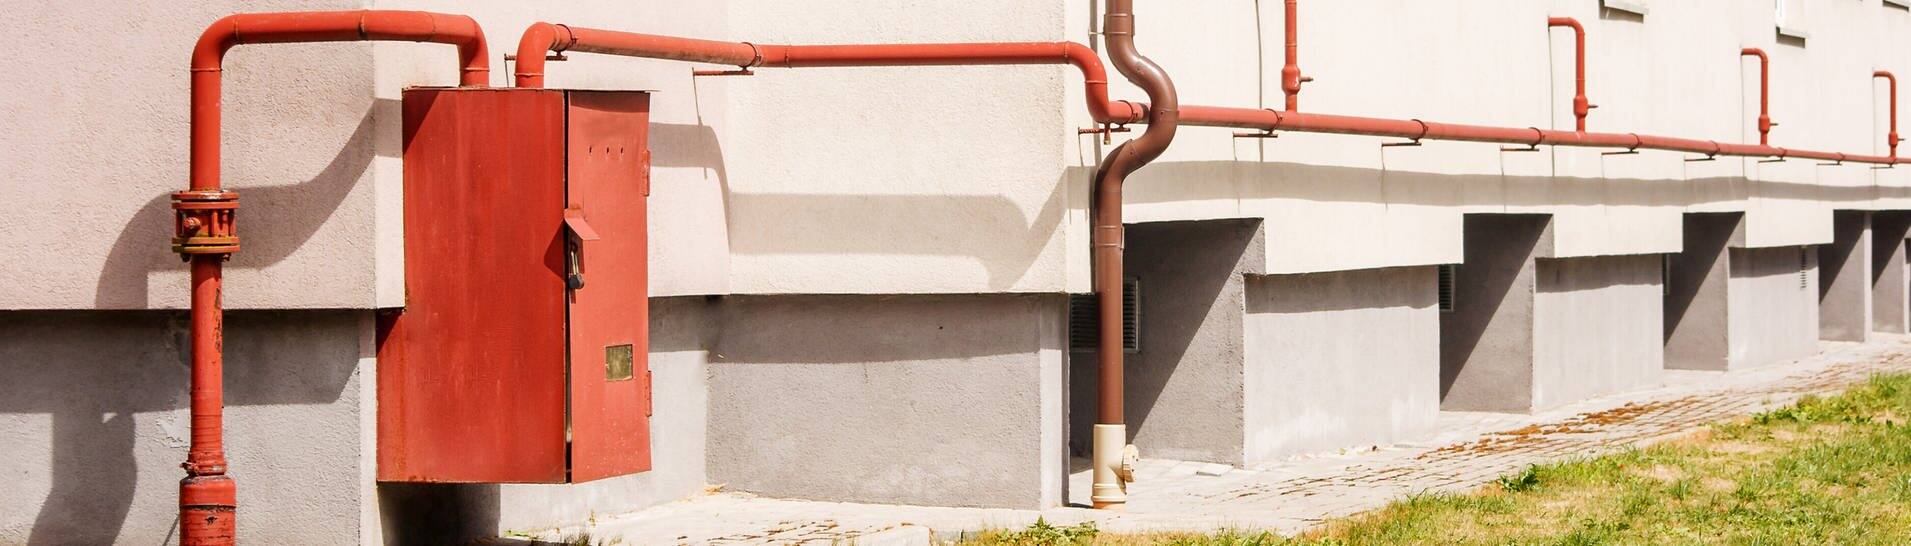 Roter Gas-Verteilerkasten an einer Hauswand (Foto: IMAGO, agefotostock)